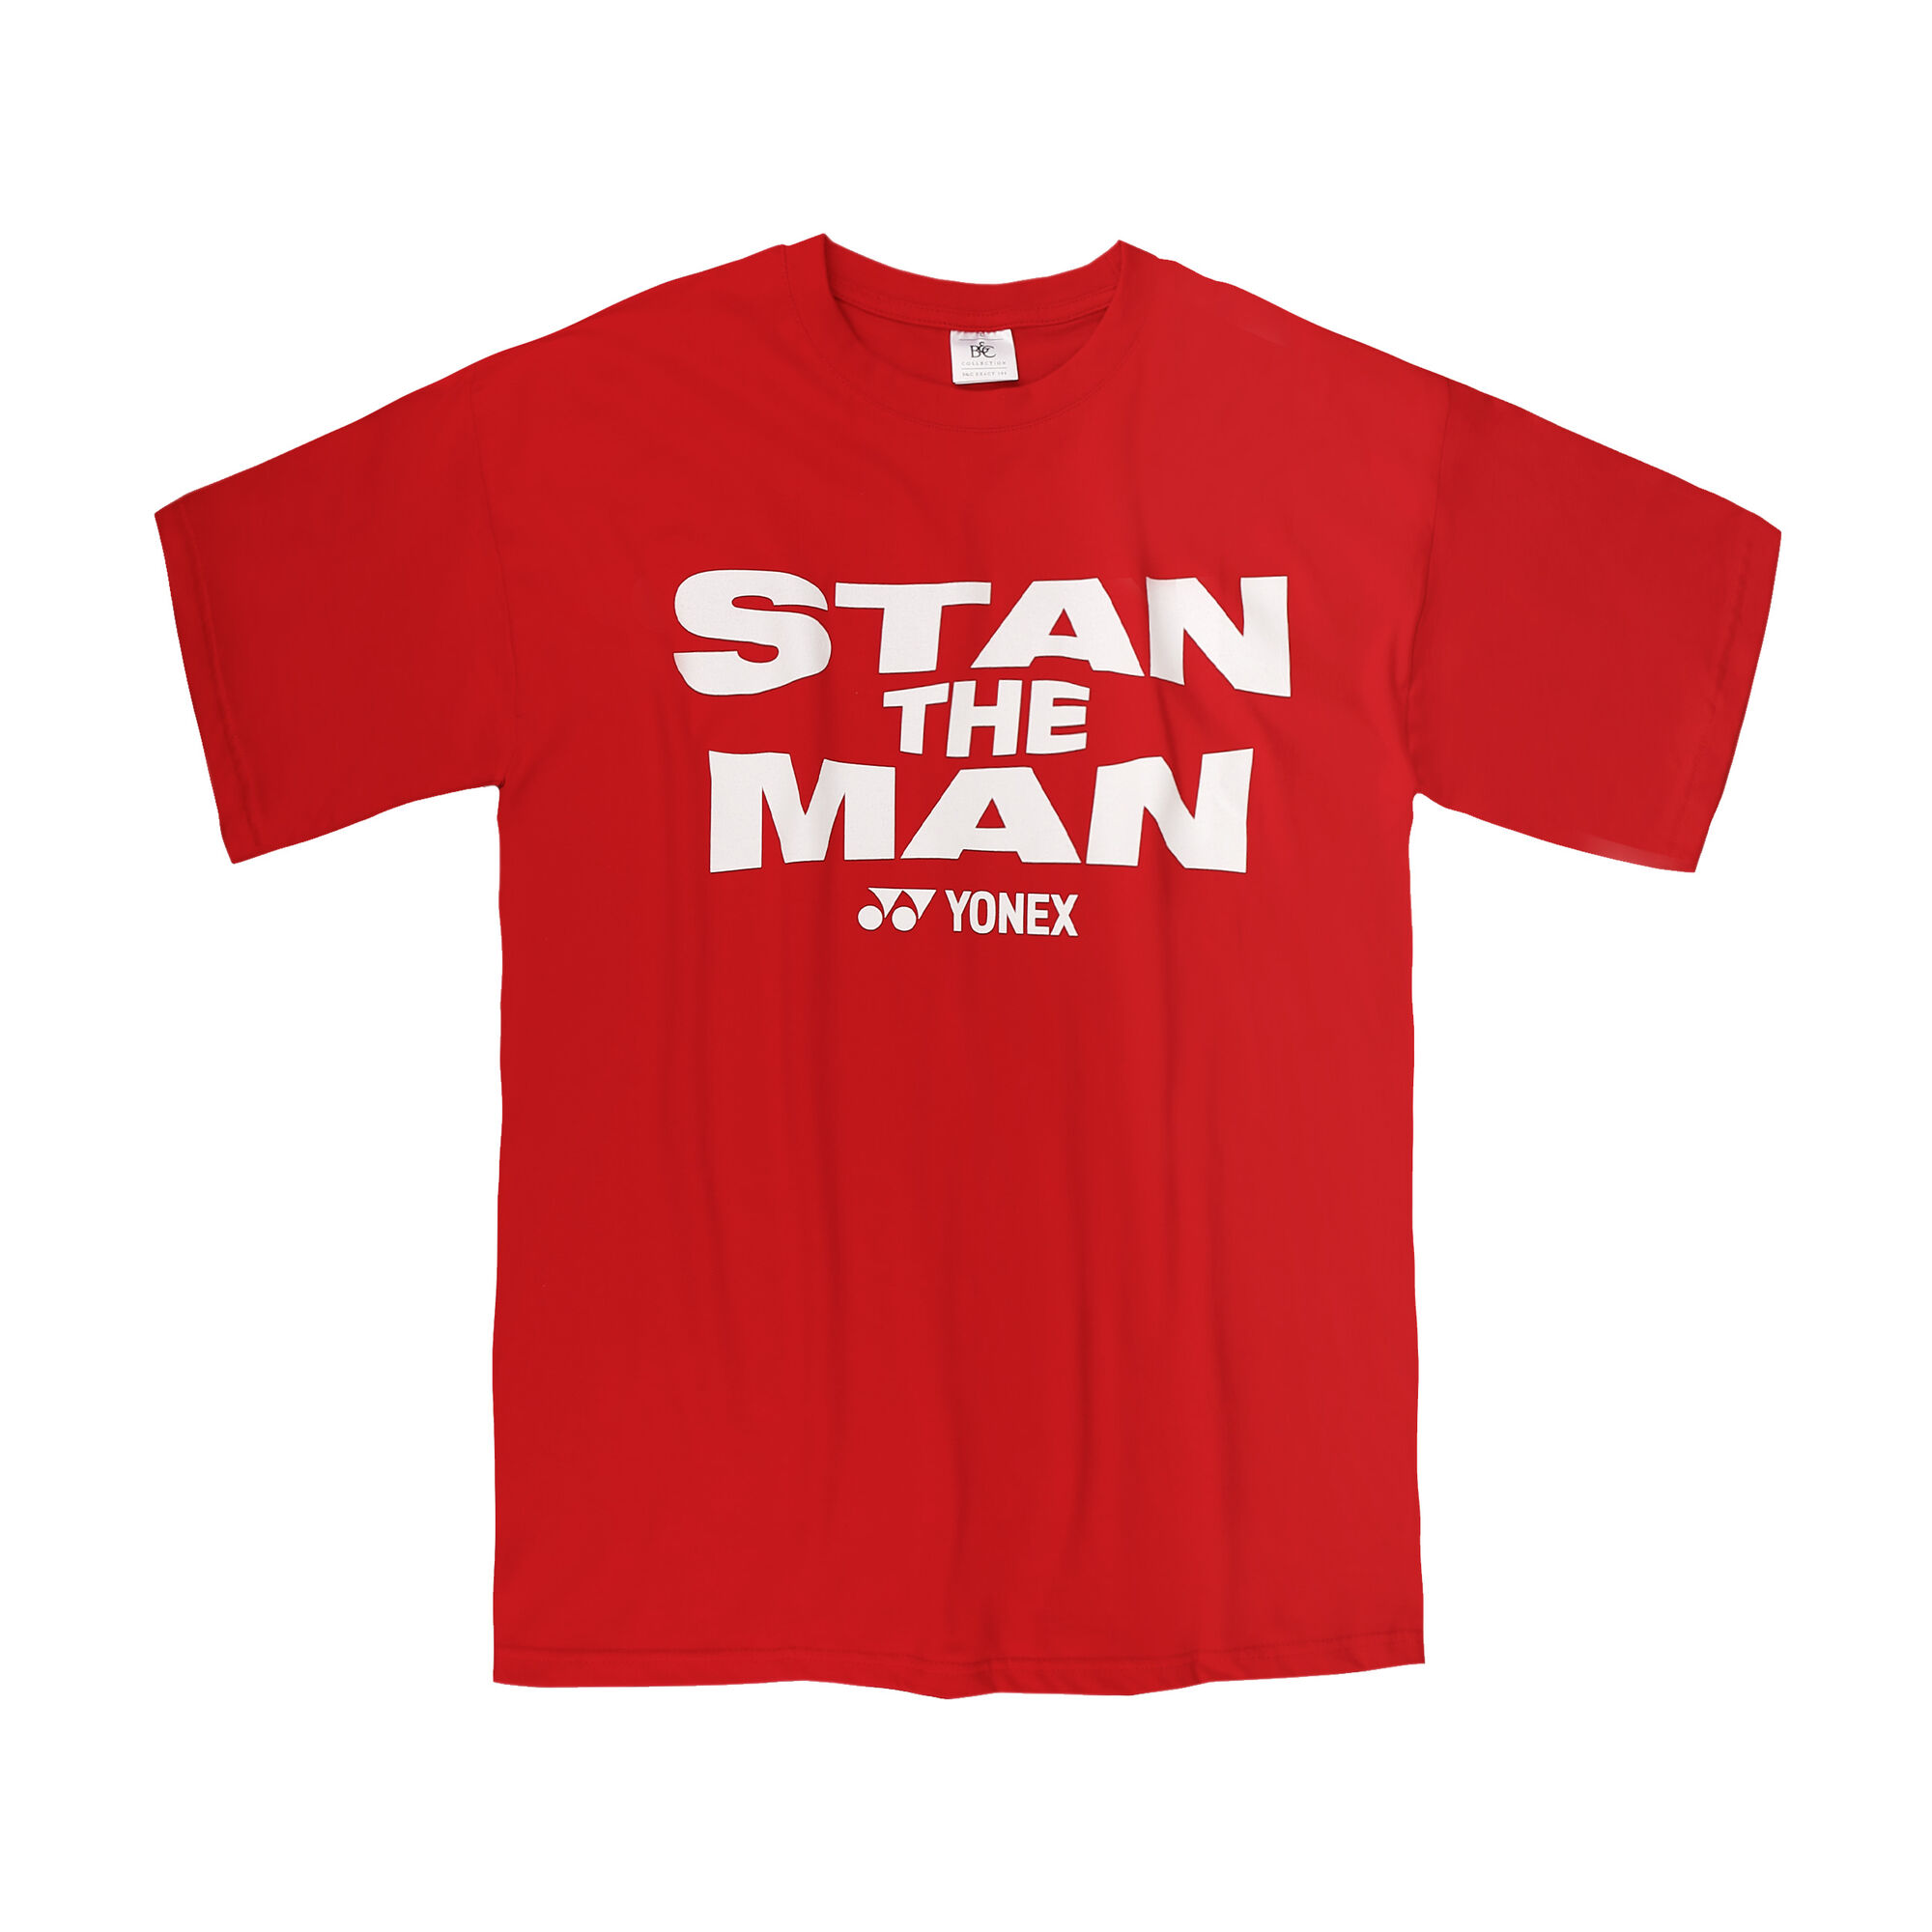 Yonex Stan the Man Tee RED - FINAL SALE